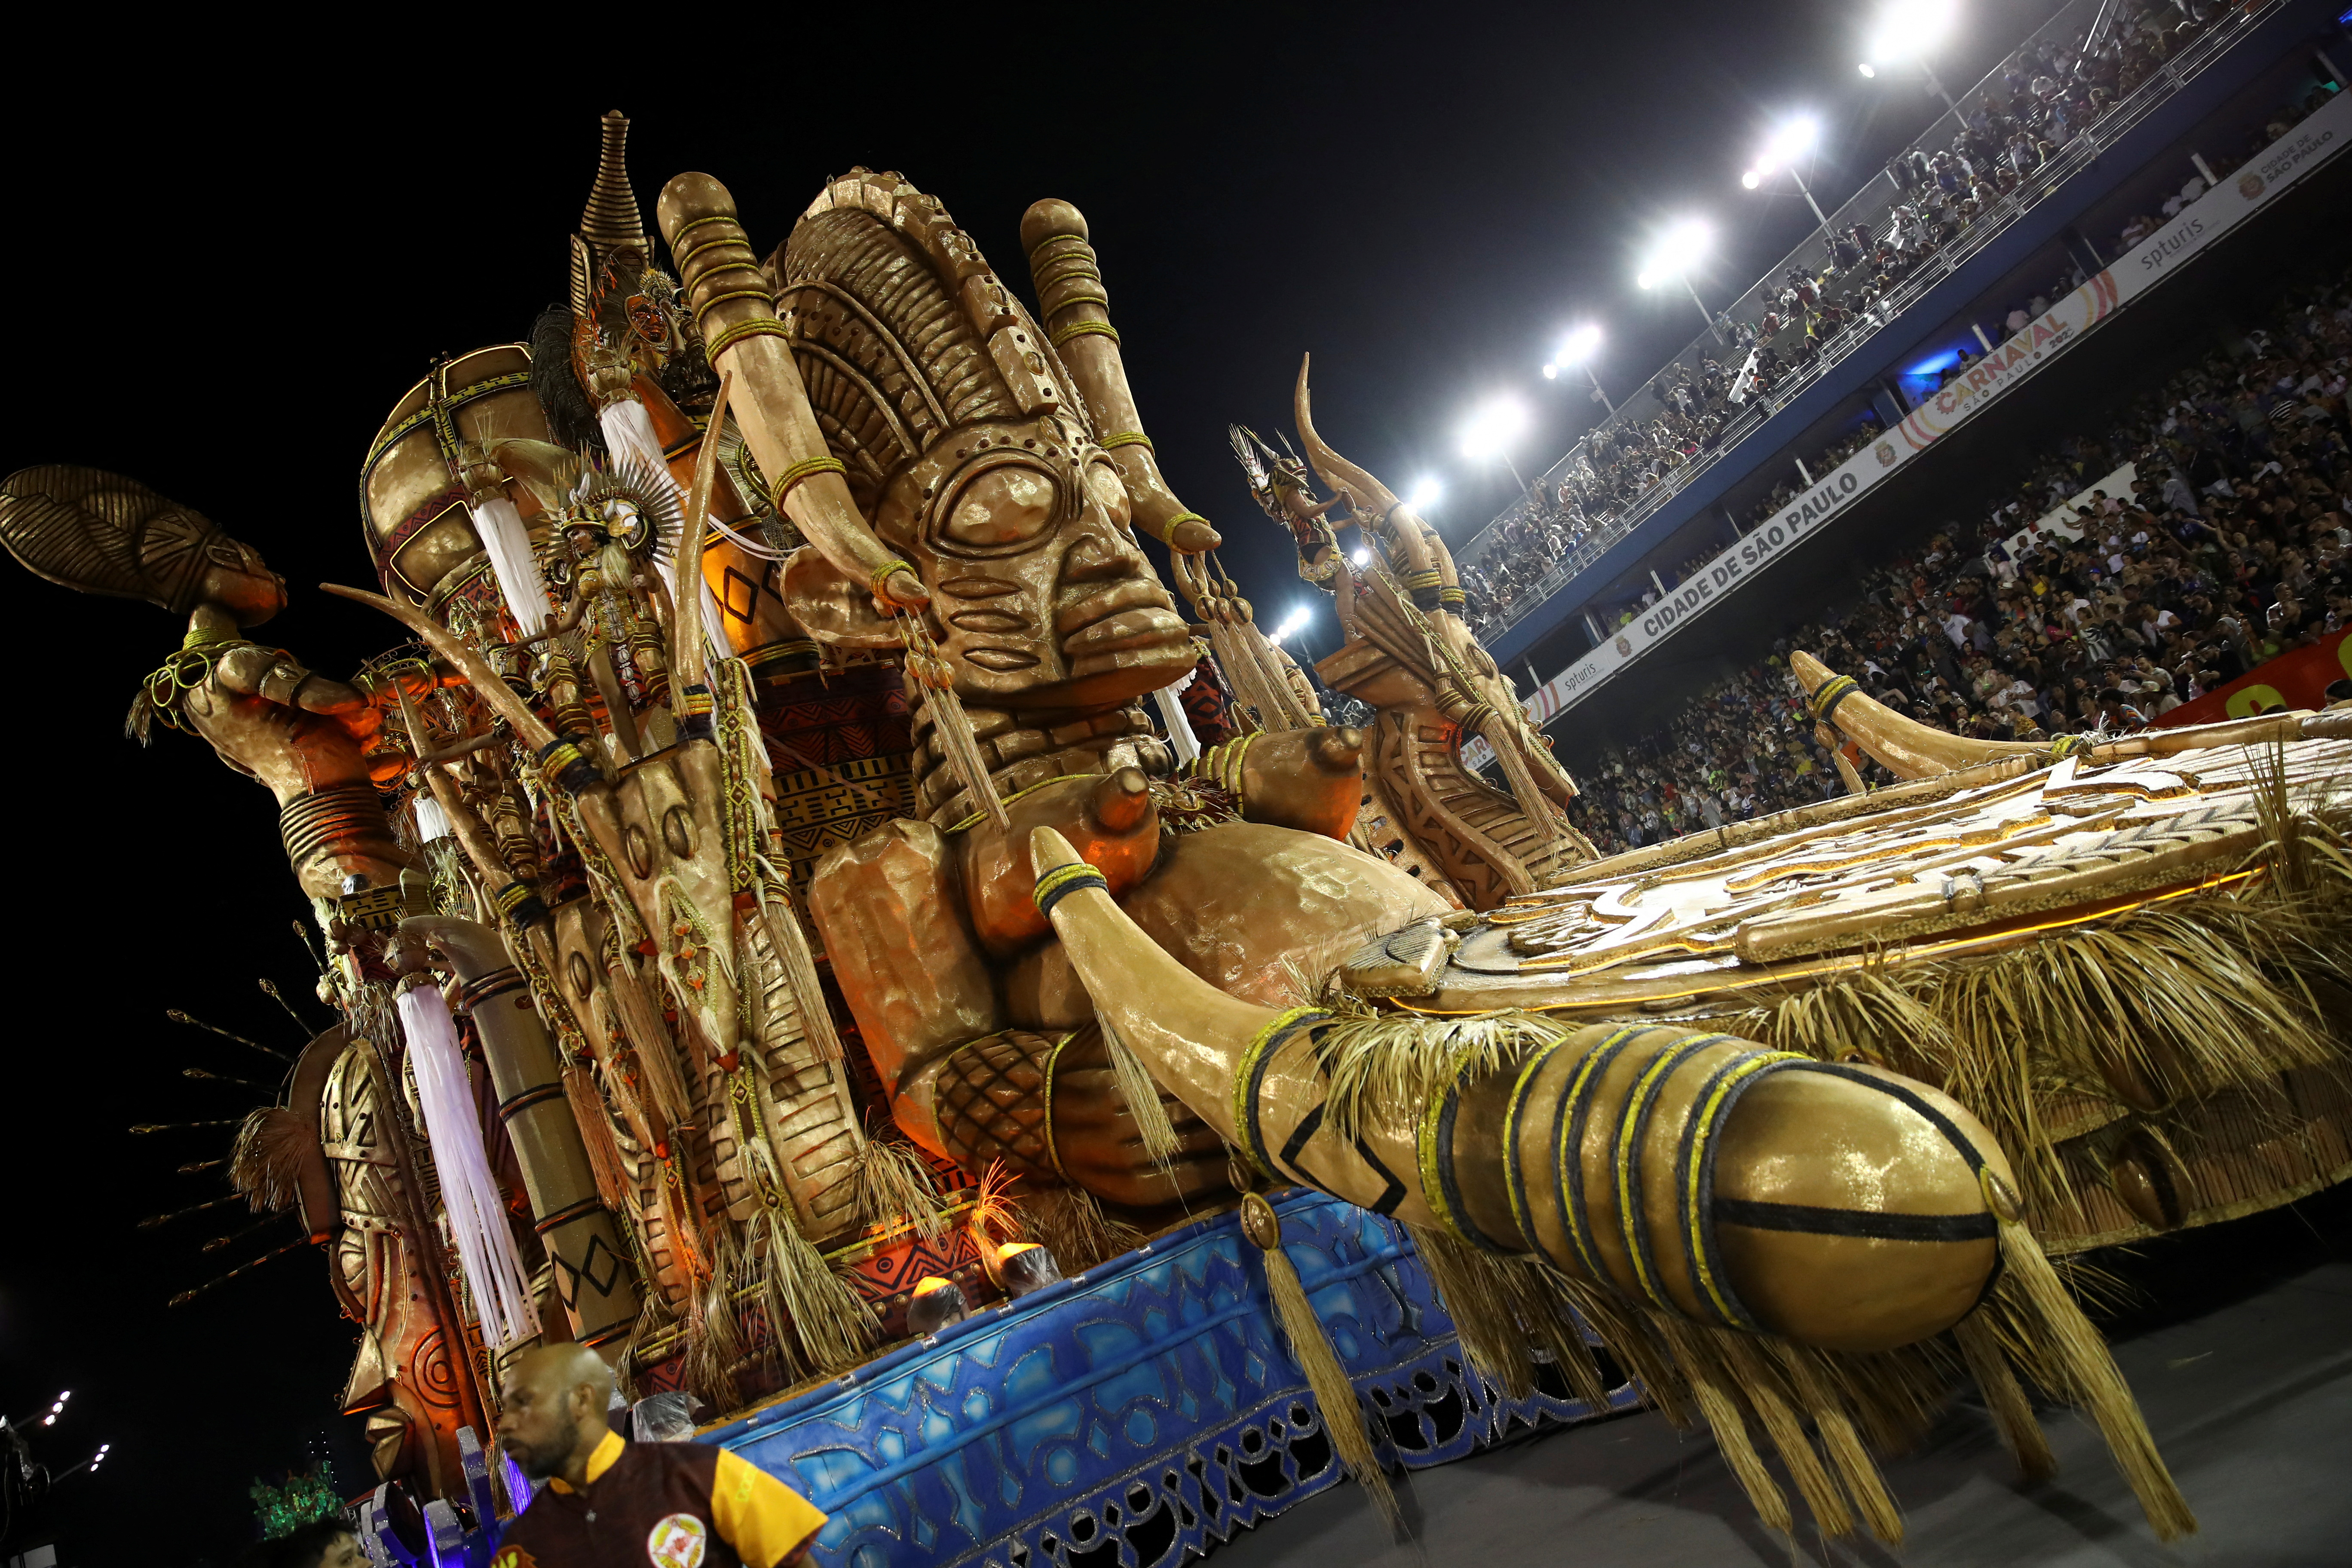 Juerguistas de la escuela Tom Maior actúan durante la primera noche del desfile de Carnaval en el Sambódromo Anhembi en Sao Paulo, Brasil 18 de febrero 2023. REUTERS/Carla Carniel